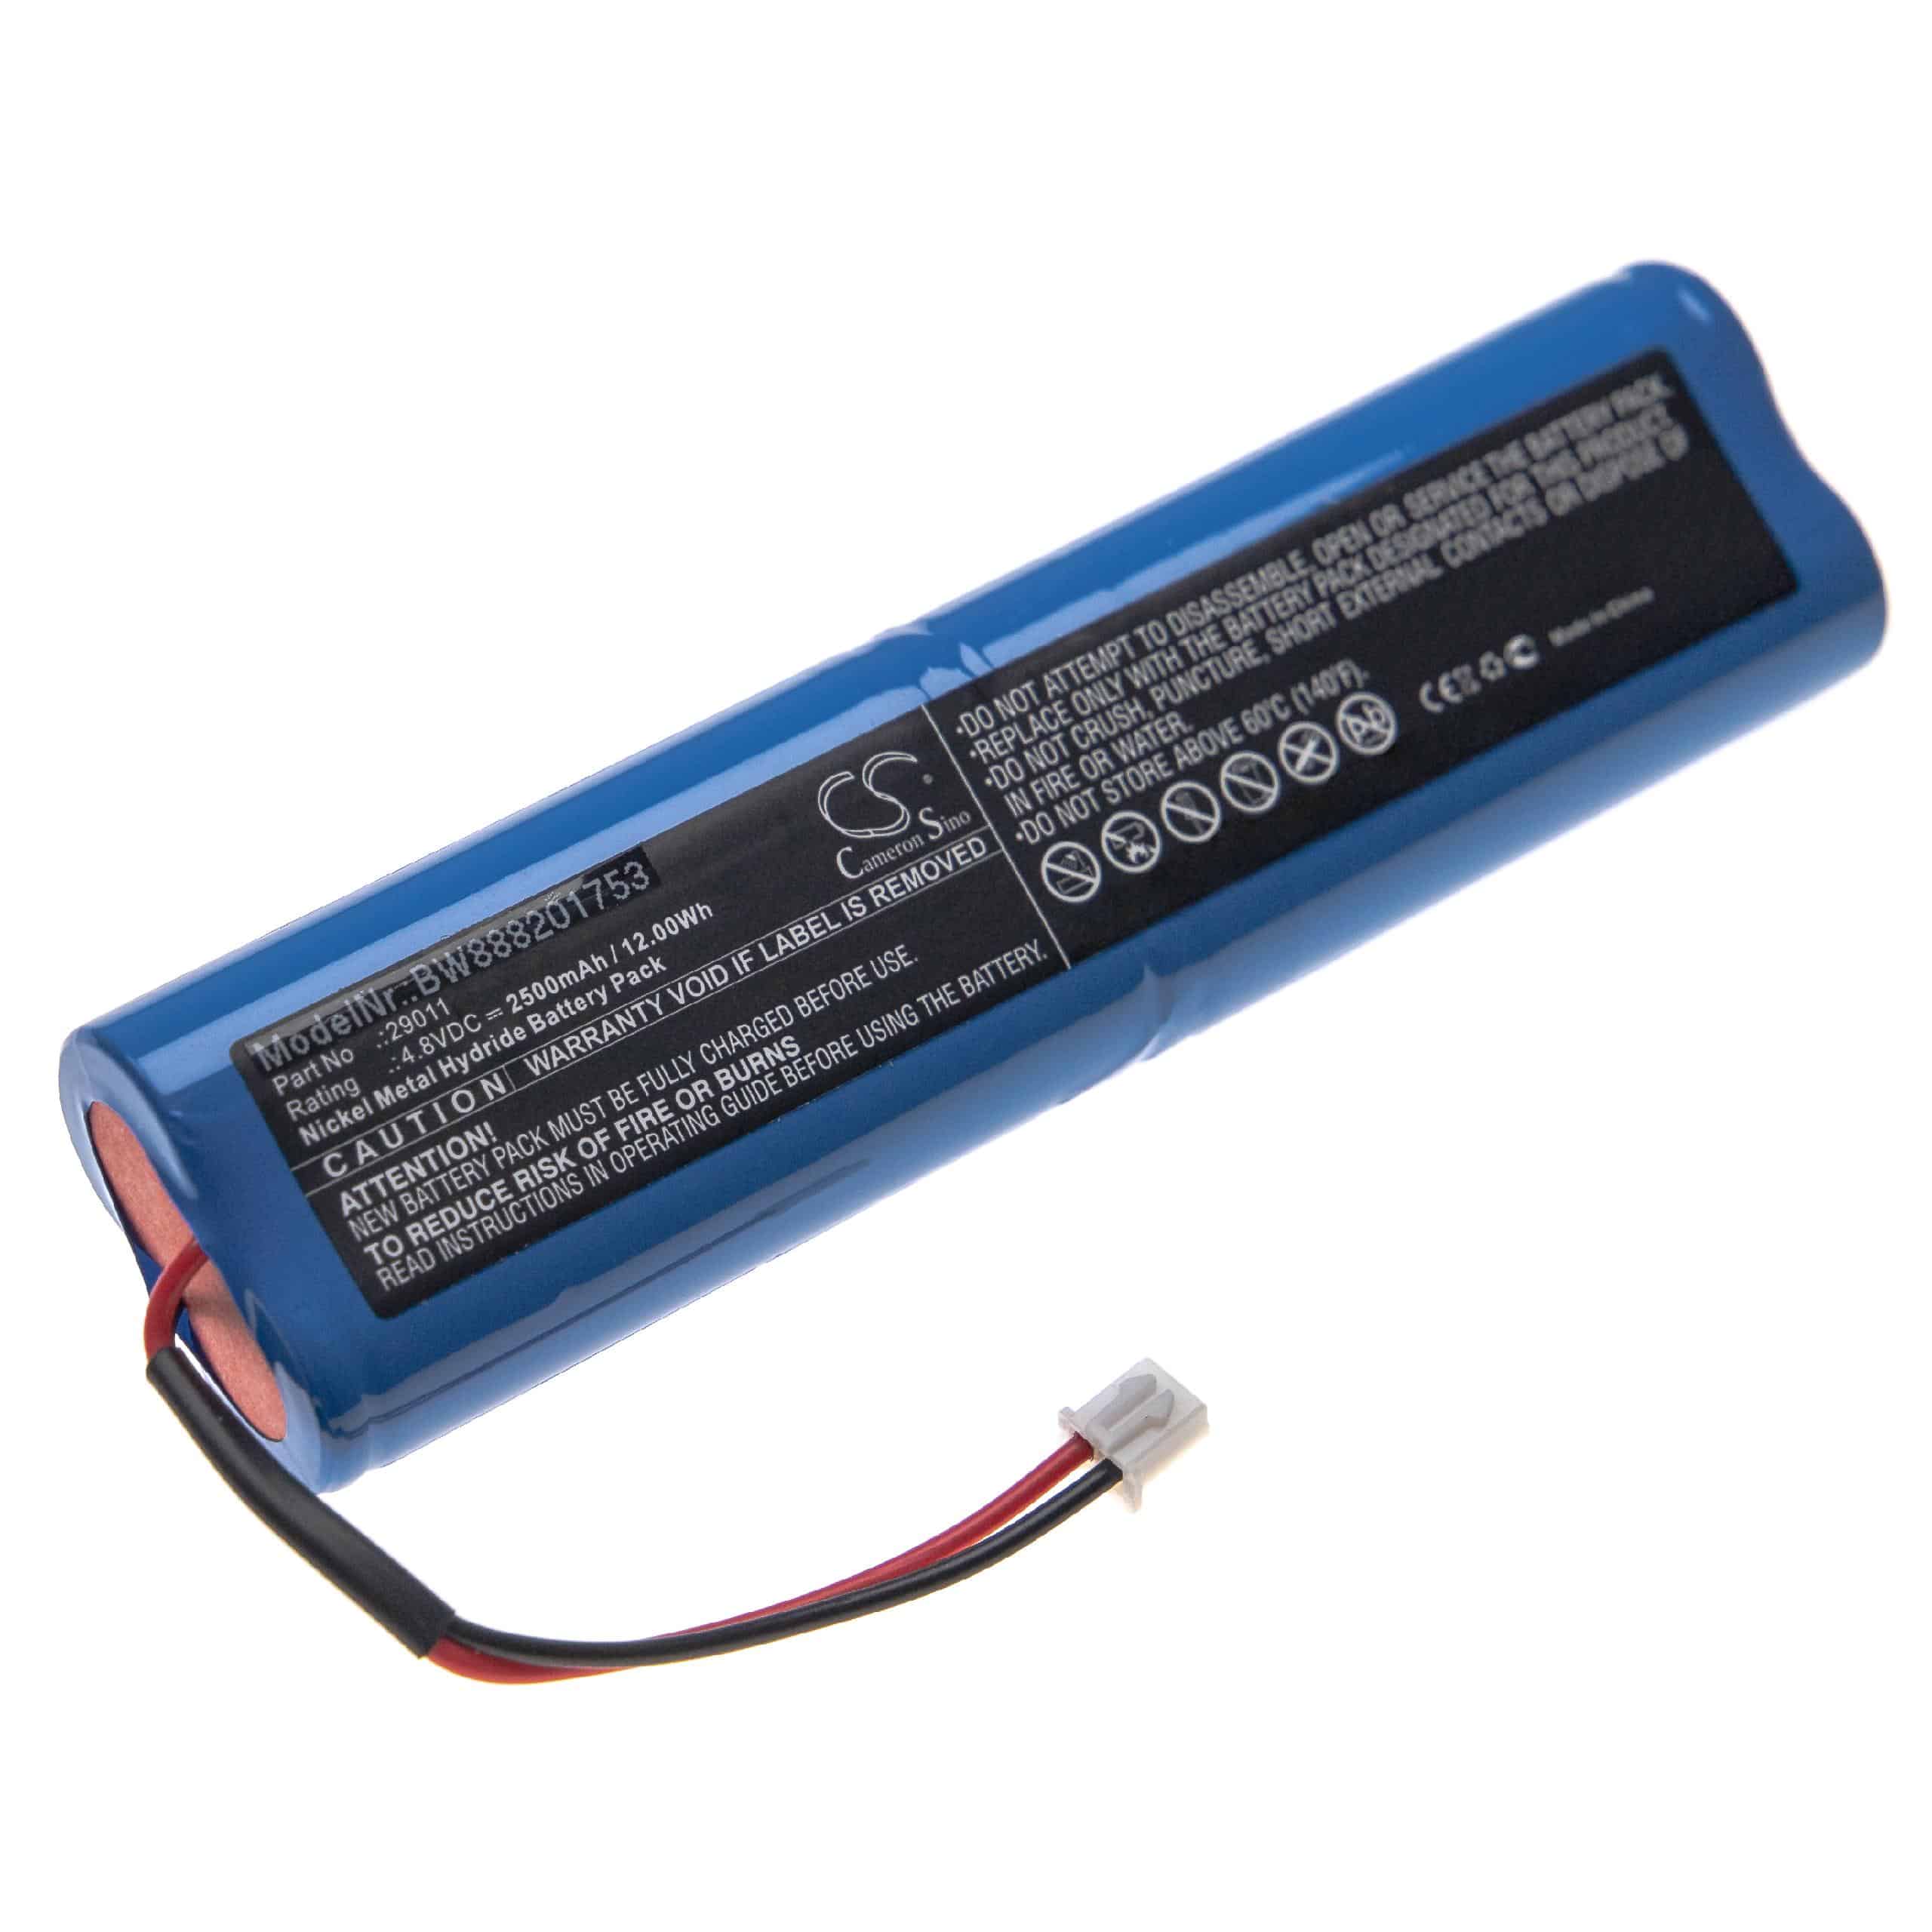 Batterie remplace HAZET 29011 pour lampe de poche - 2500mAh 4,8V NiMH